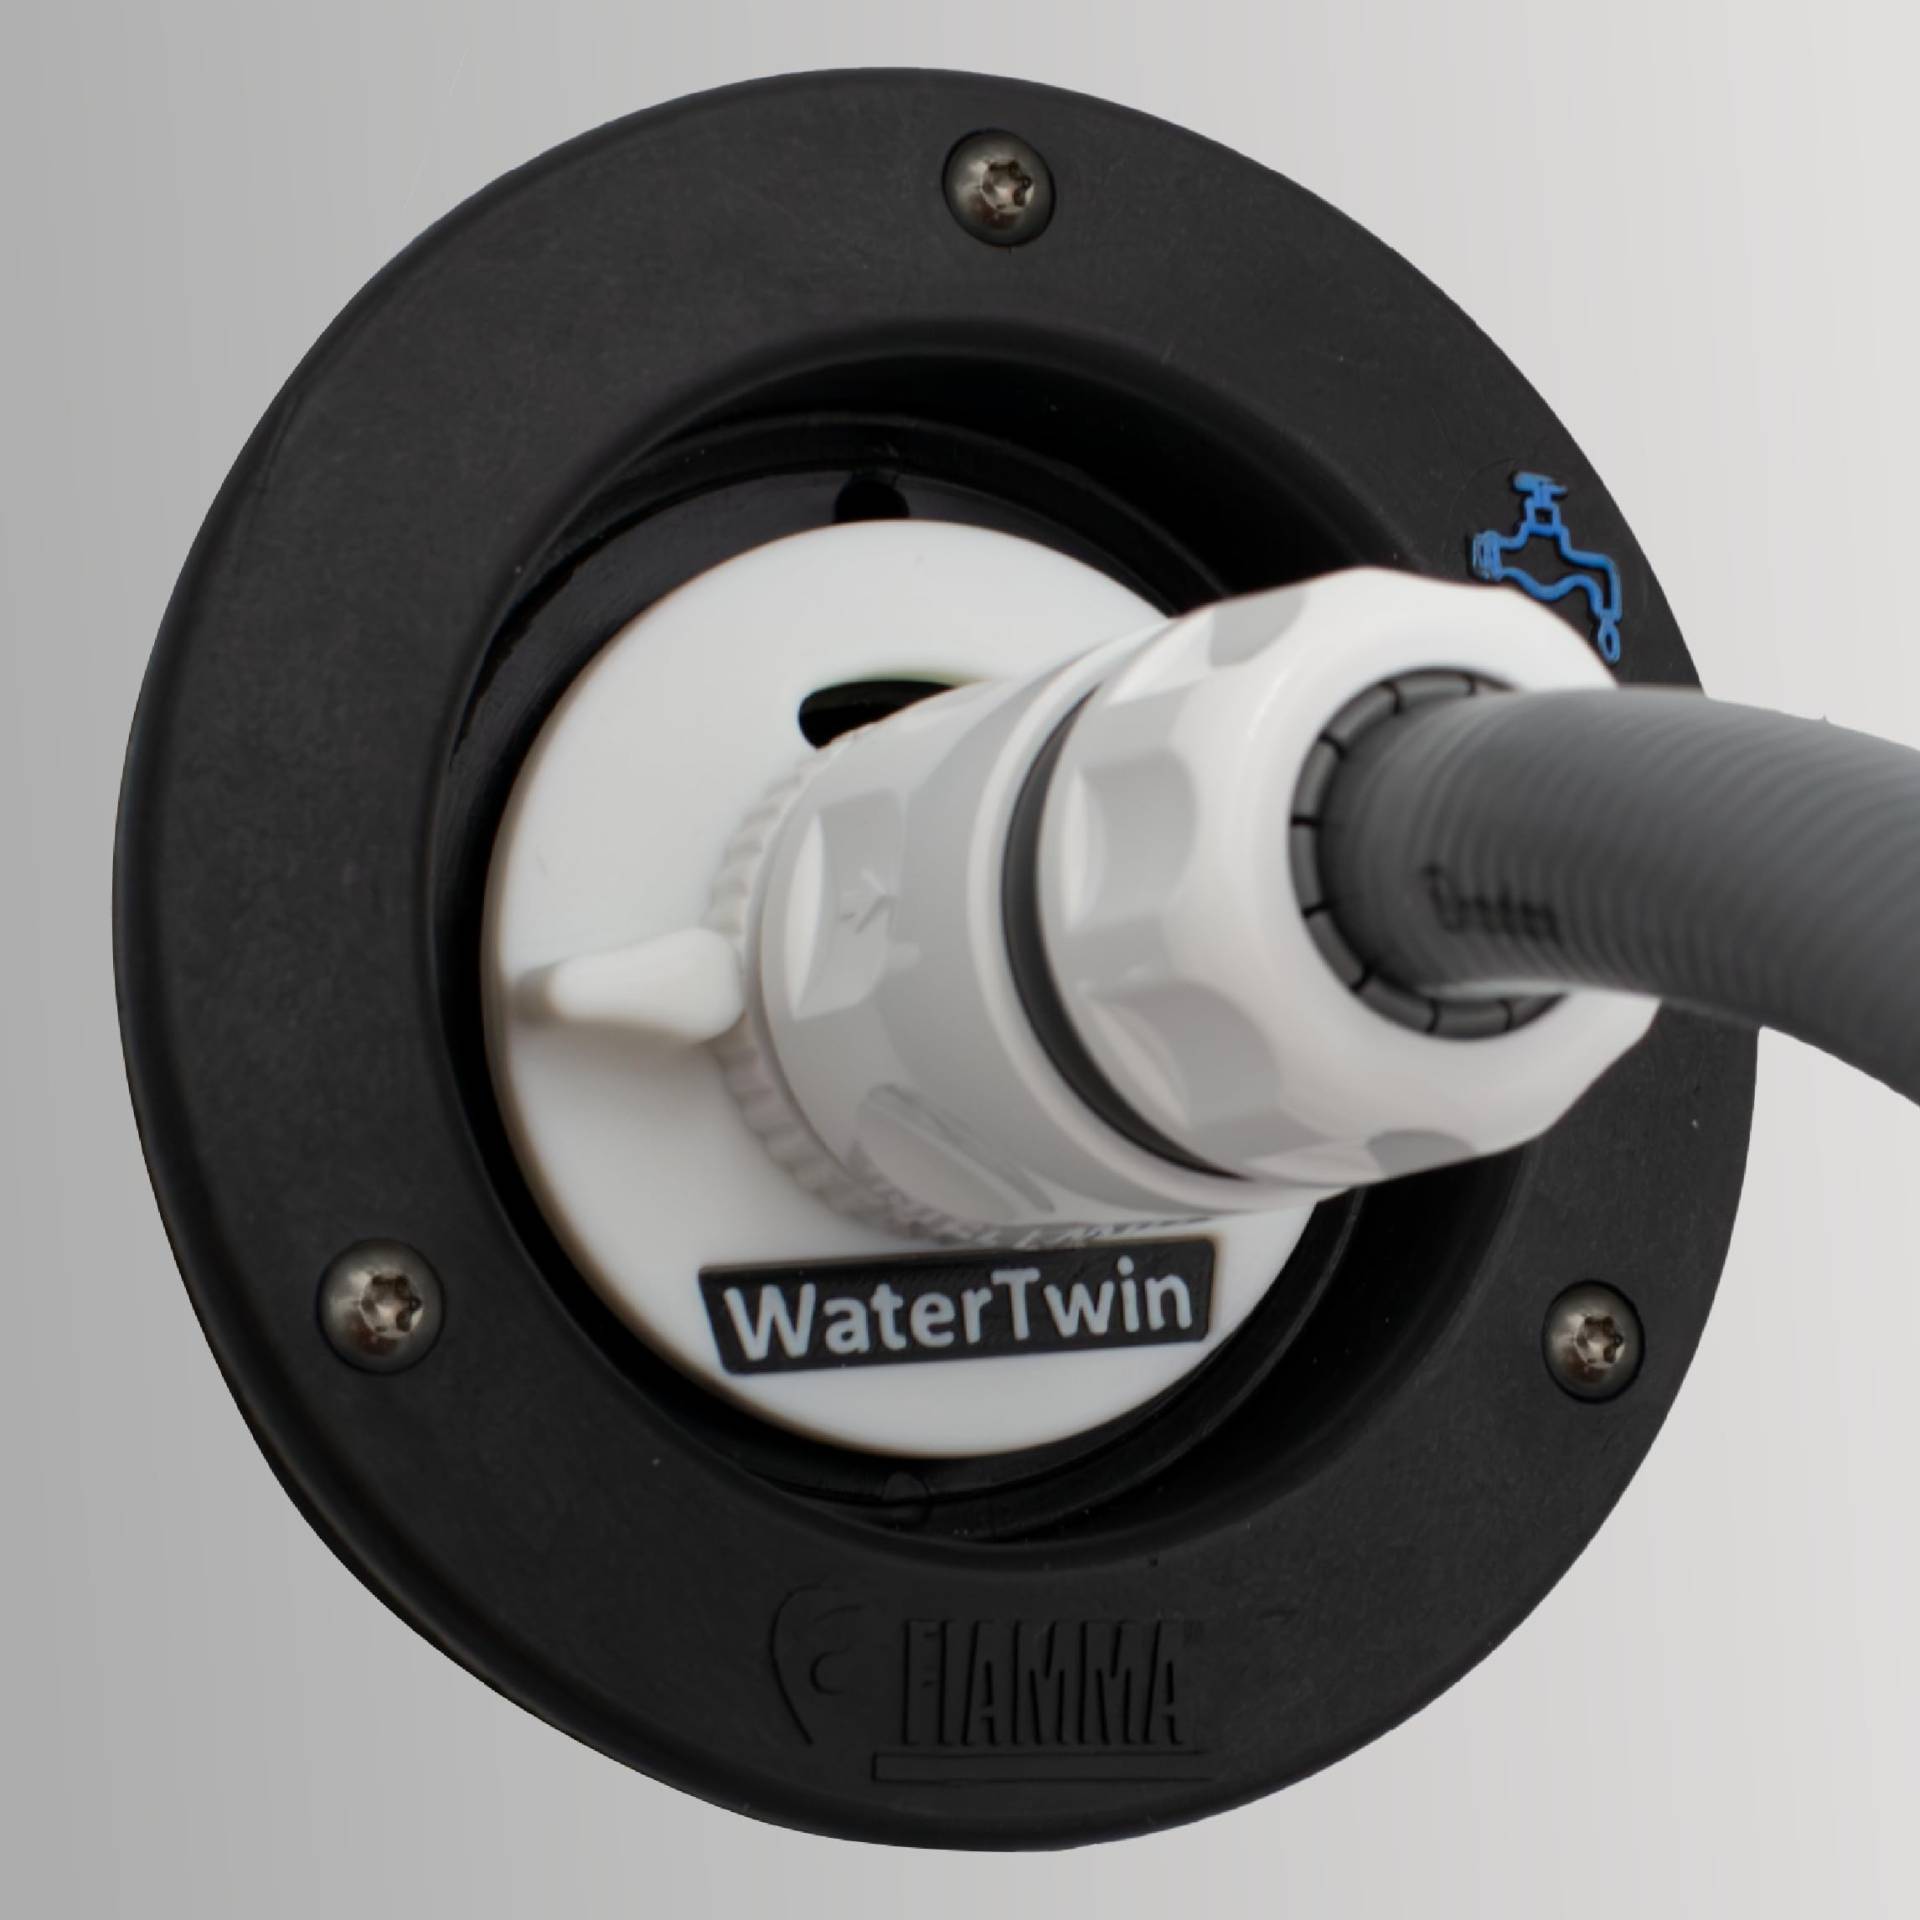 WATERTWIN Wohnmobil Wassertankdeckel Befüll Adapter mit Gardena Anschluss für Fiamma Einfüllstutzen (Typ 2-Pin D:65) von MaJoCompTec